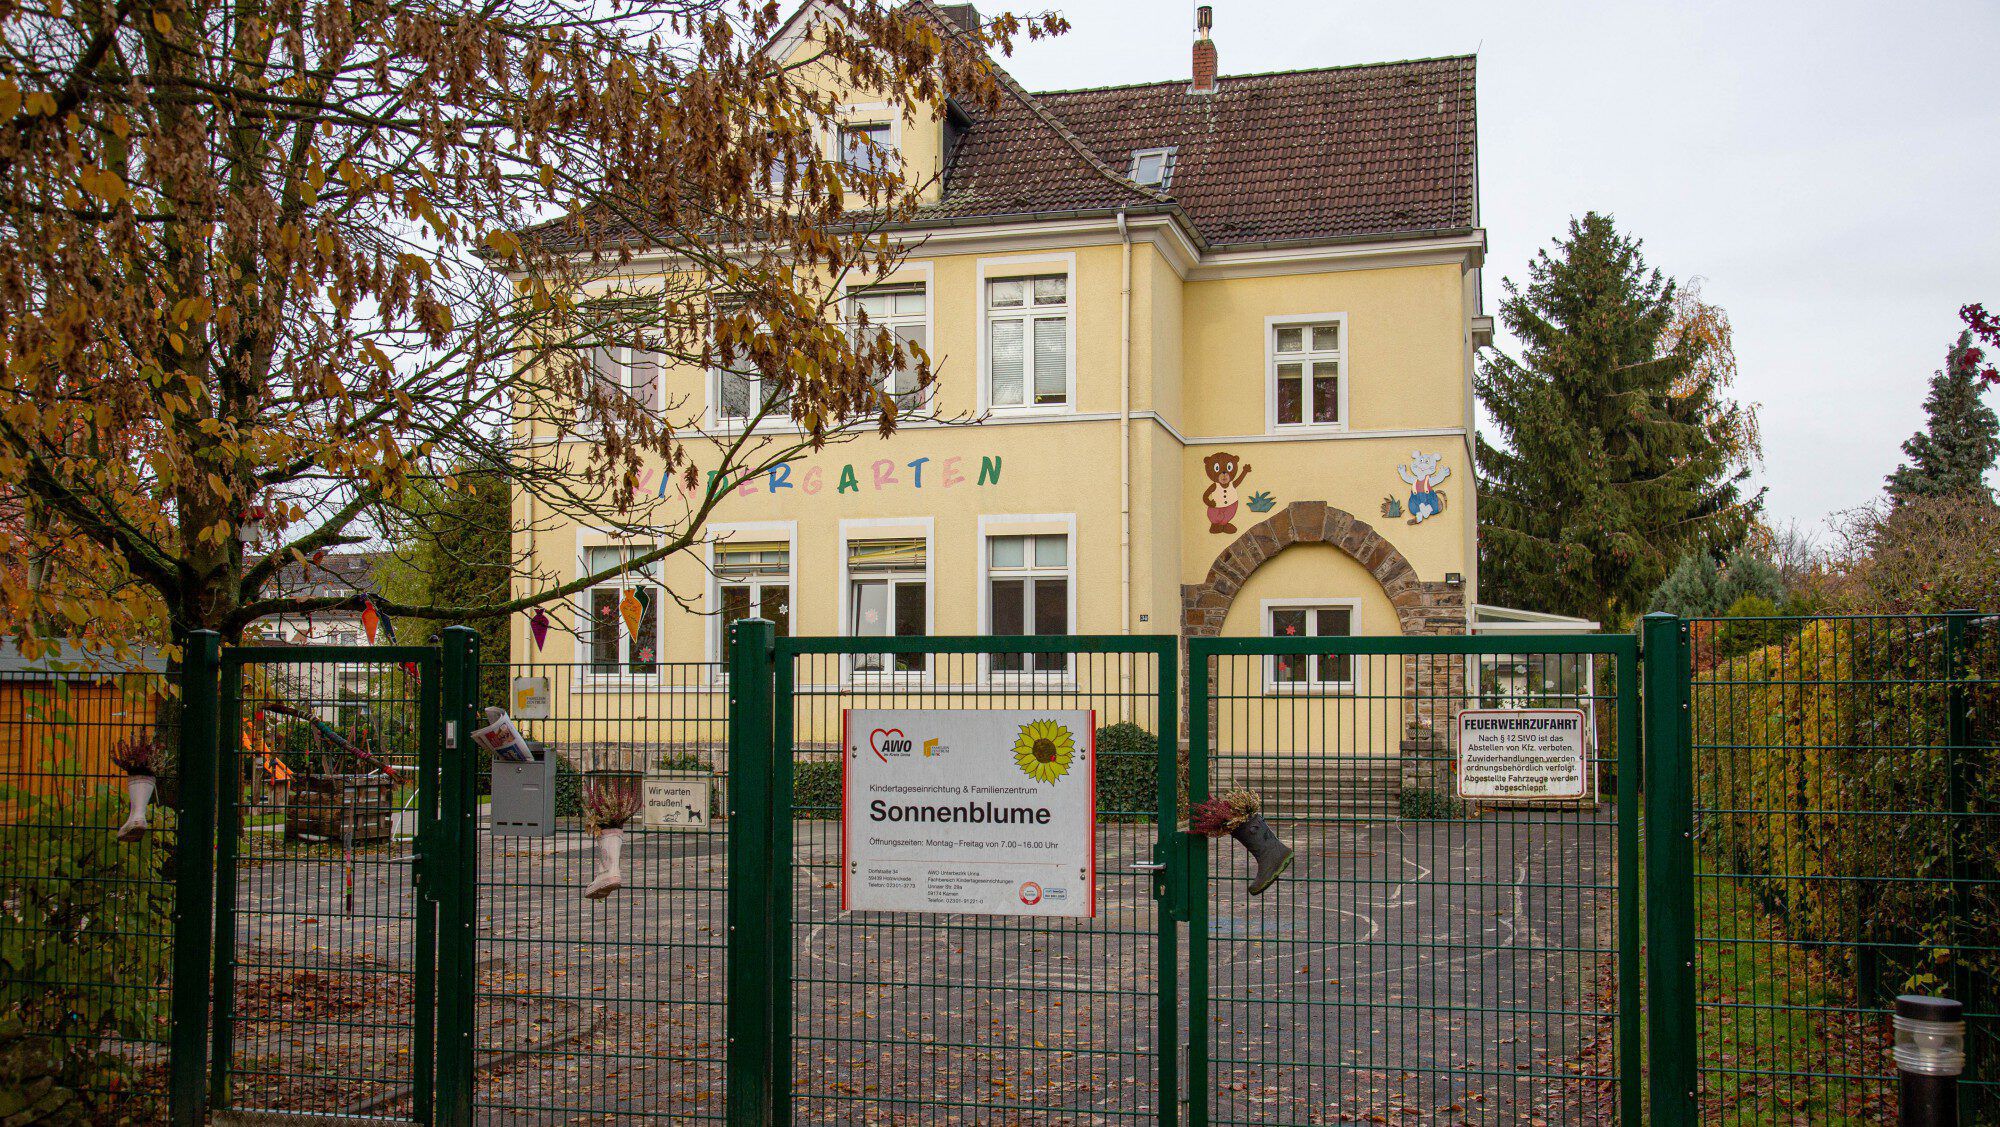 Das Grundstück mit dem ehemaligen Kindergarten der AWO an der Dorfstraße ist inzwischen verkauft worden. Die UKBS will darauf 30 bis 36 moderne, altengerechte Mietwohnungen mit ambulanten Servicemöglichkeiten errichten. (Foto: P. Gräber - Emscherblog.de)